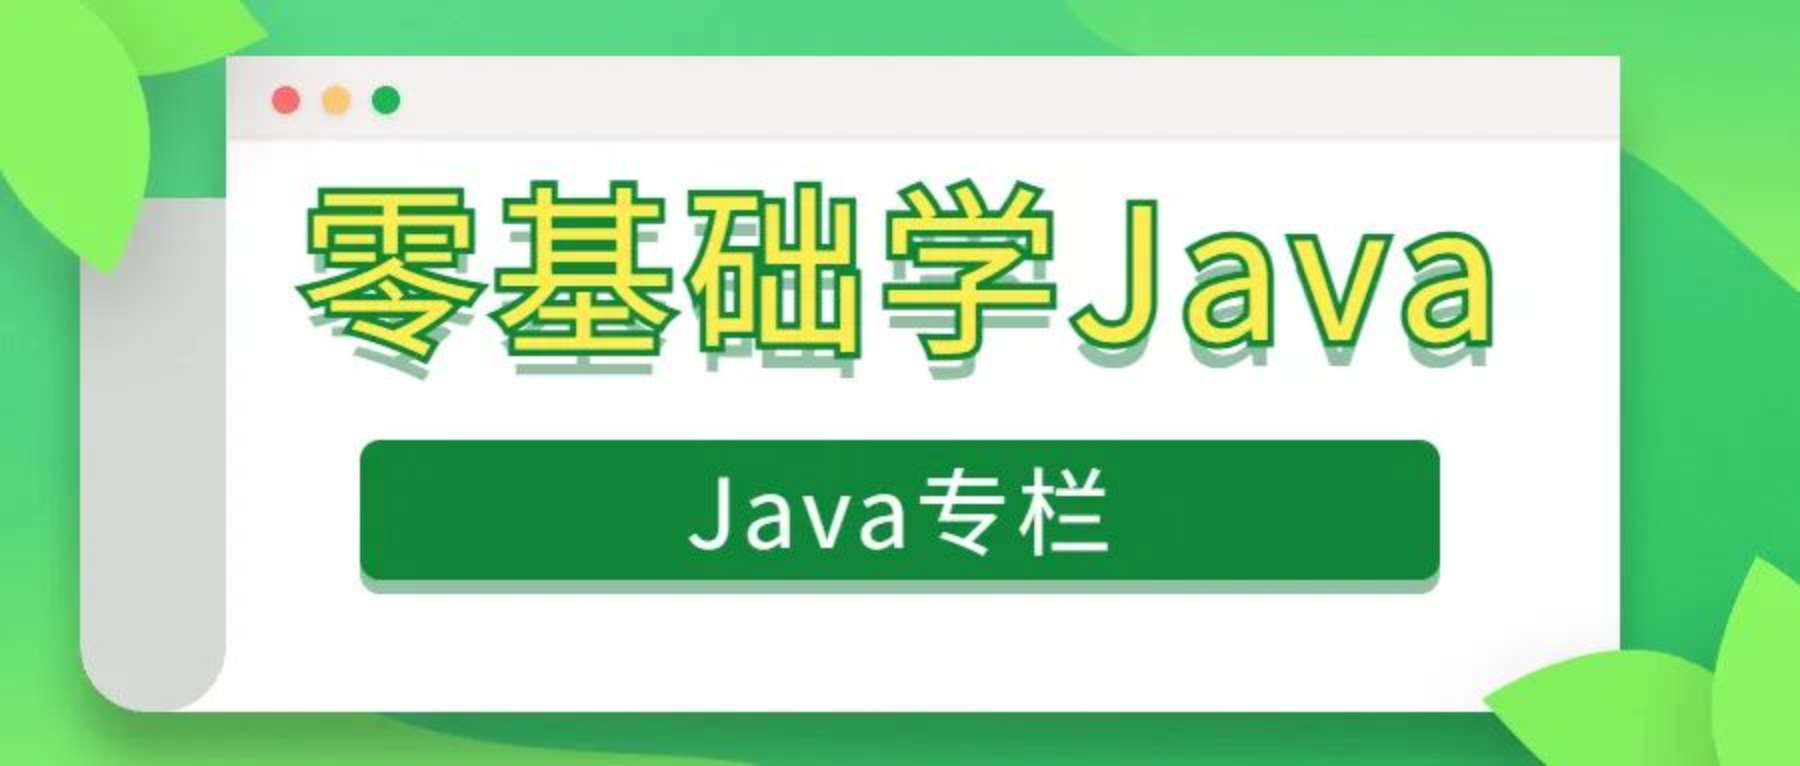 零基础学Java第一节(语法格式、数据类型)